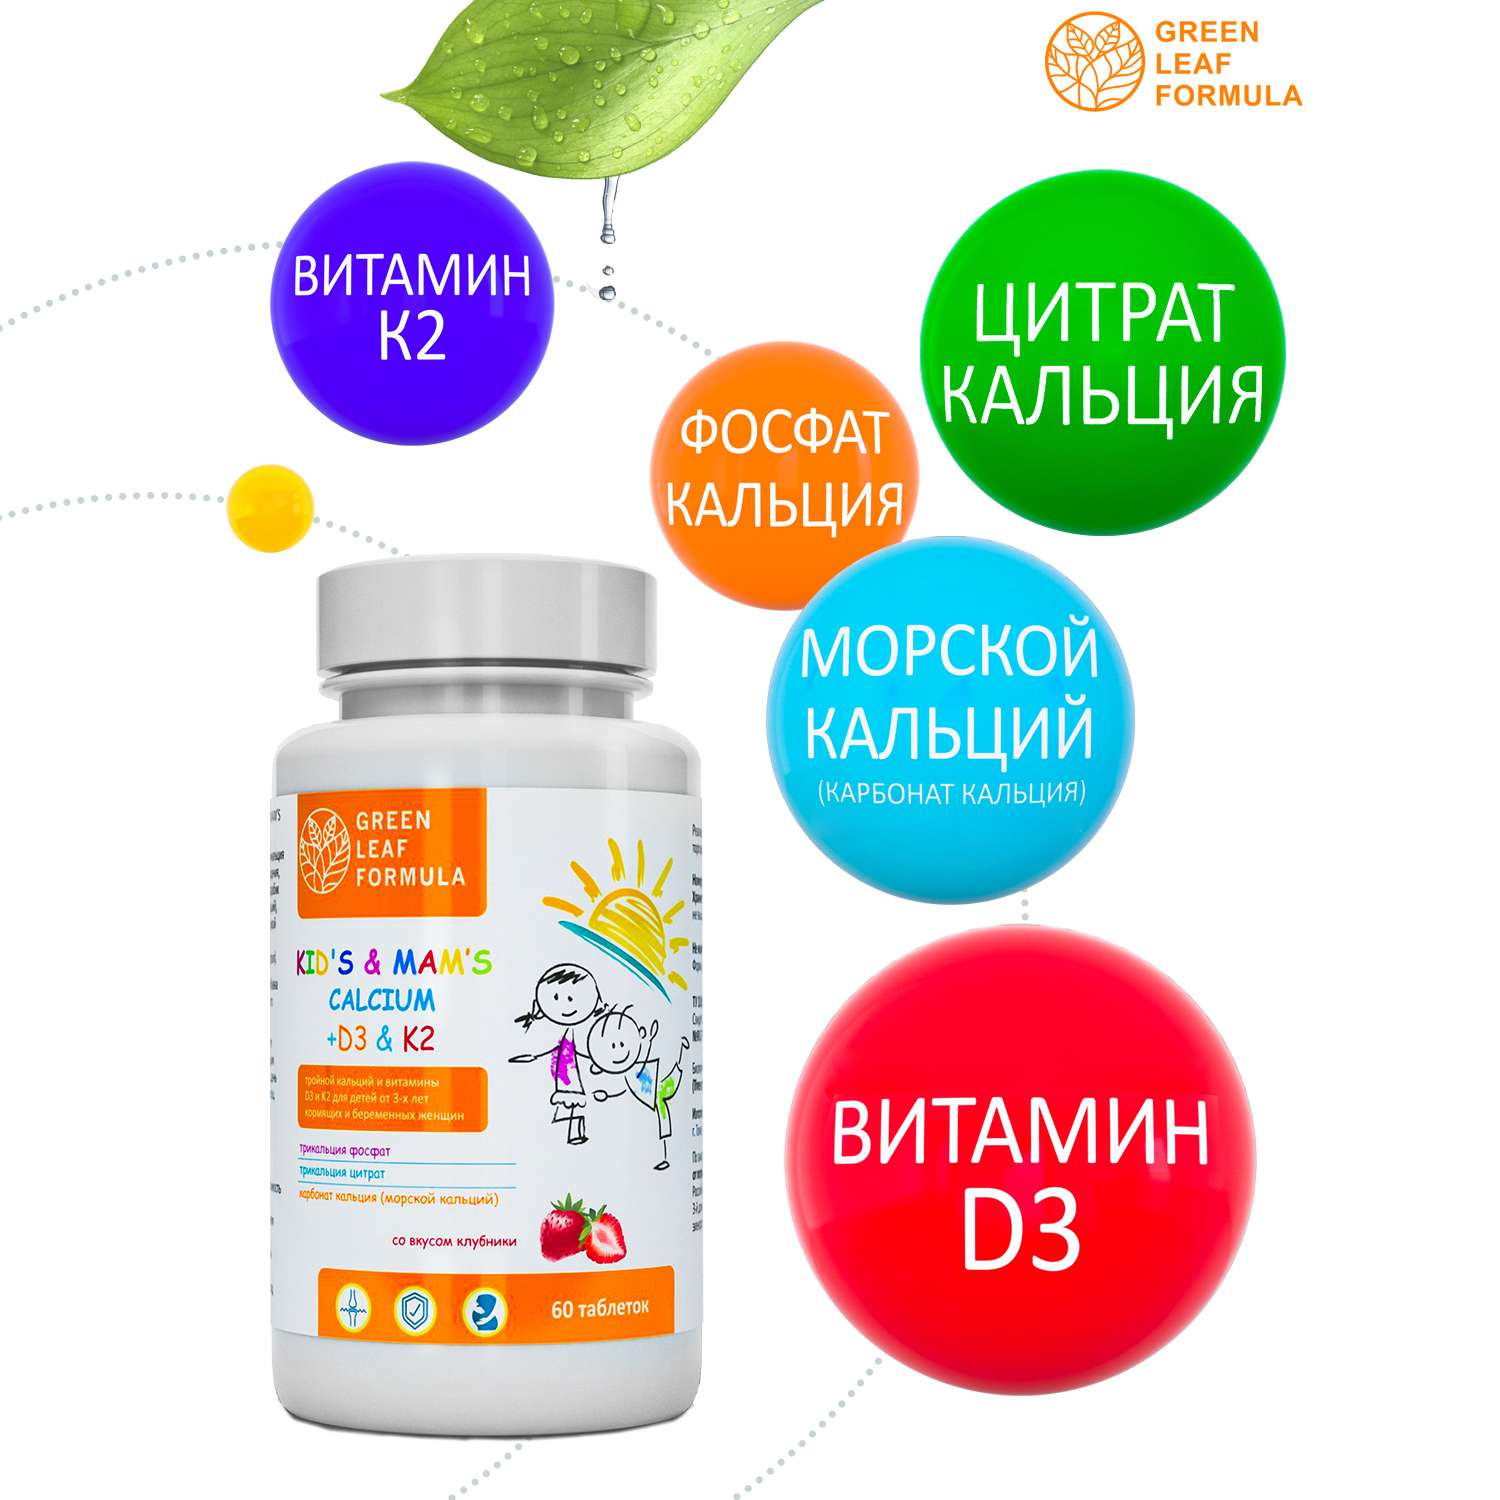 Кальций Д3 К2 для детей Green Leaf Formula витамины для костей и иммунитета - фото 4